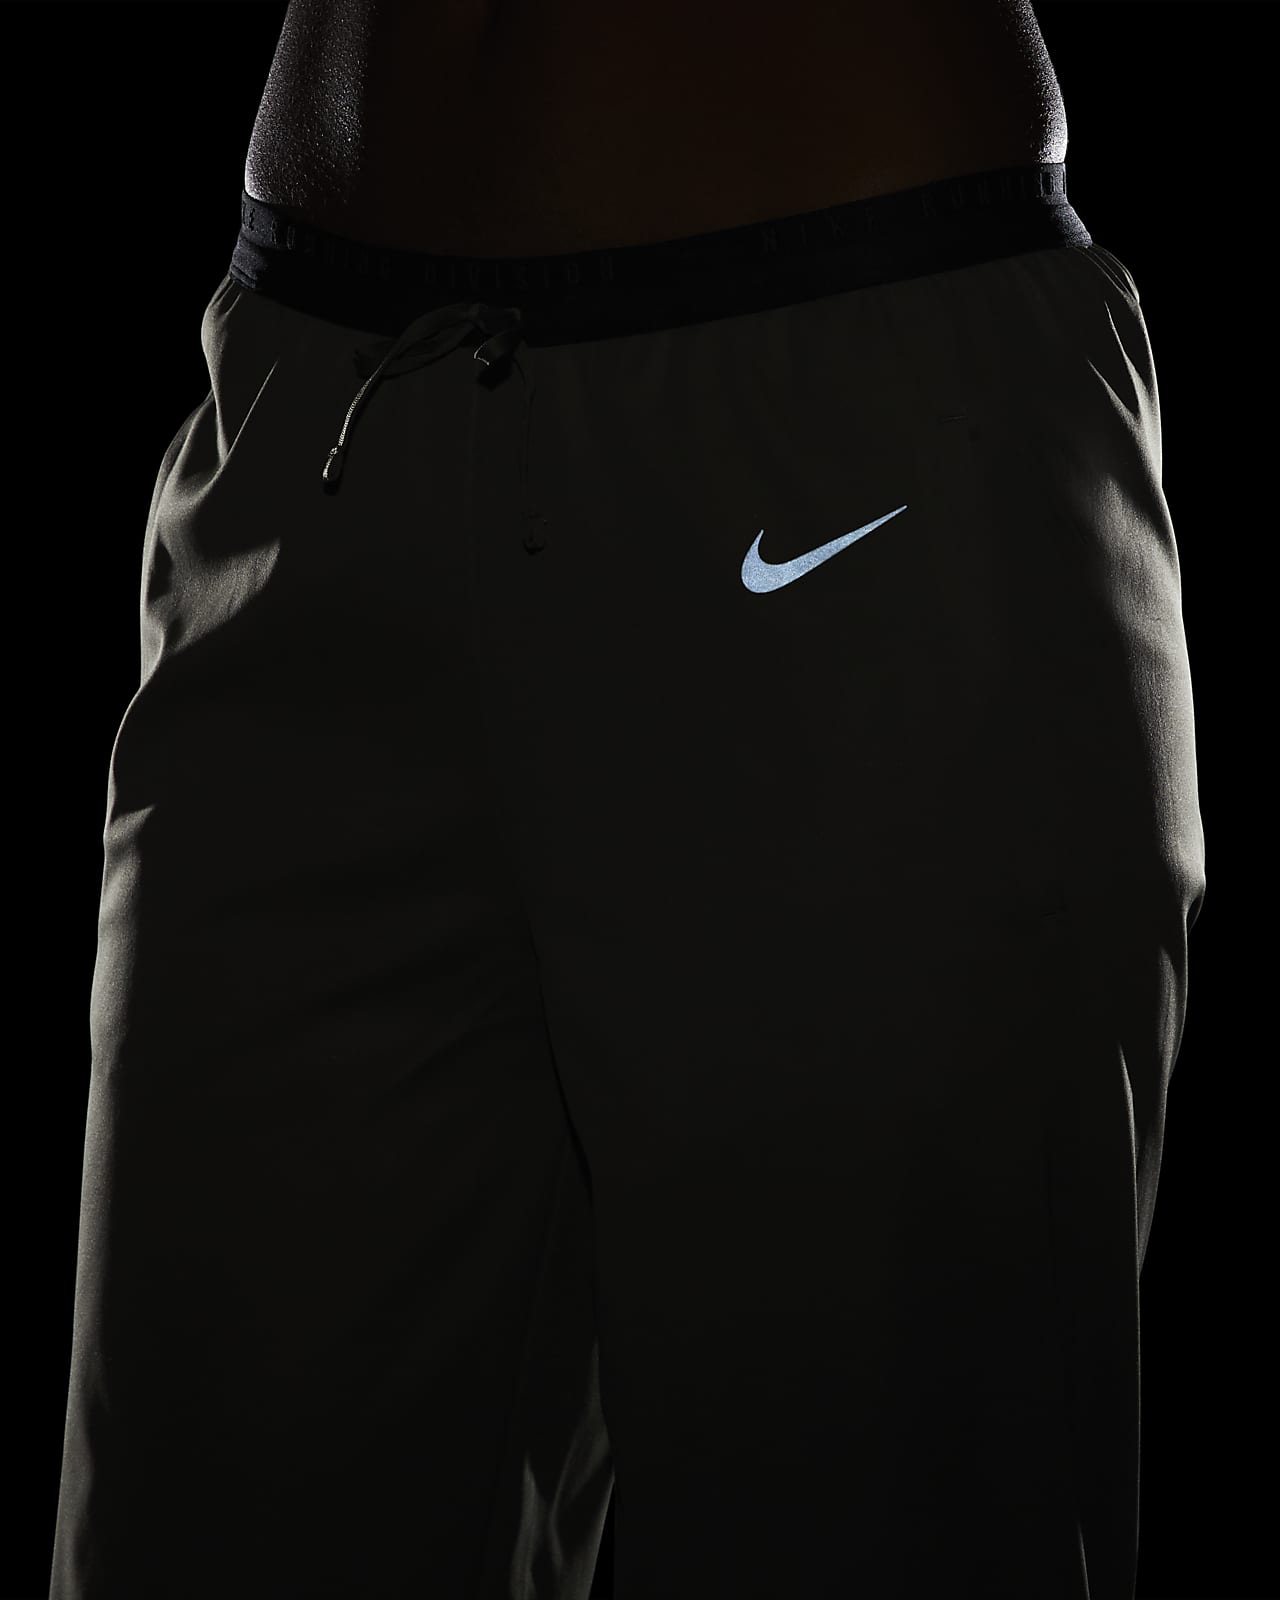 Buy Nike Women's Swift Running Pants Black in KSA -SSS